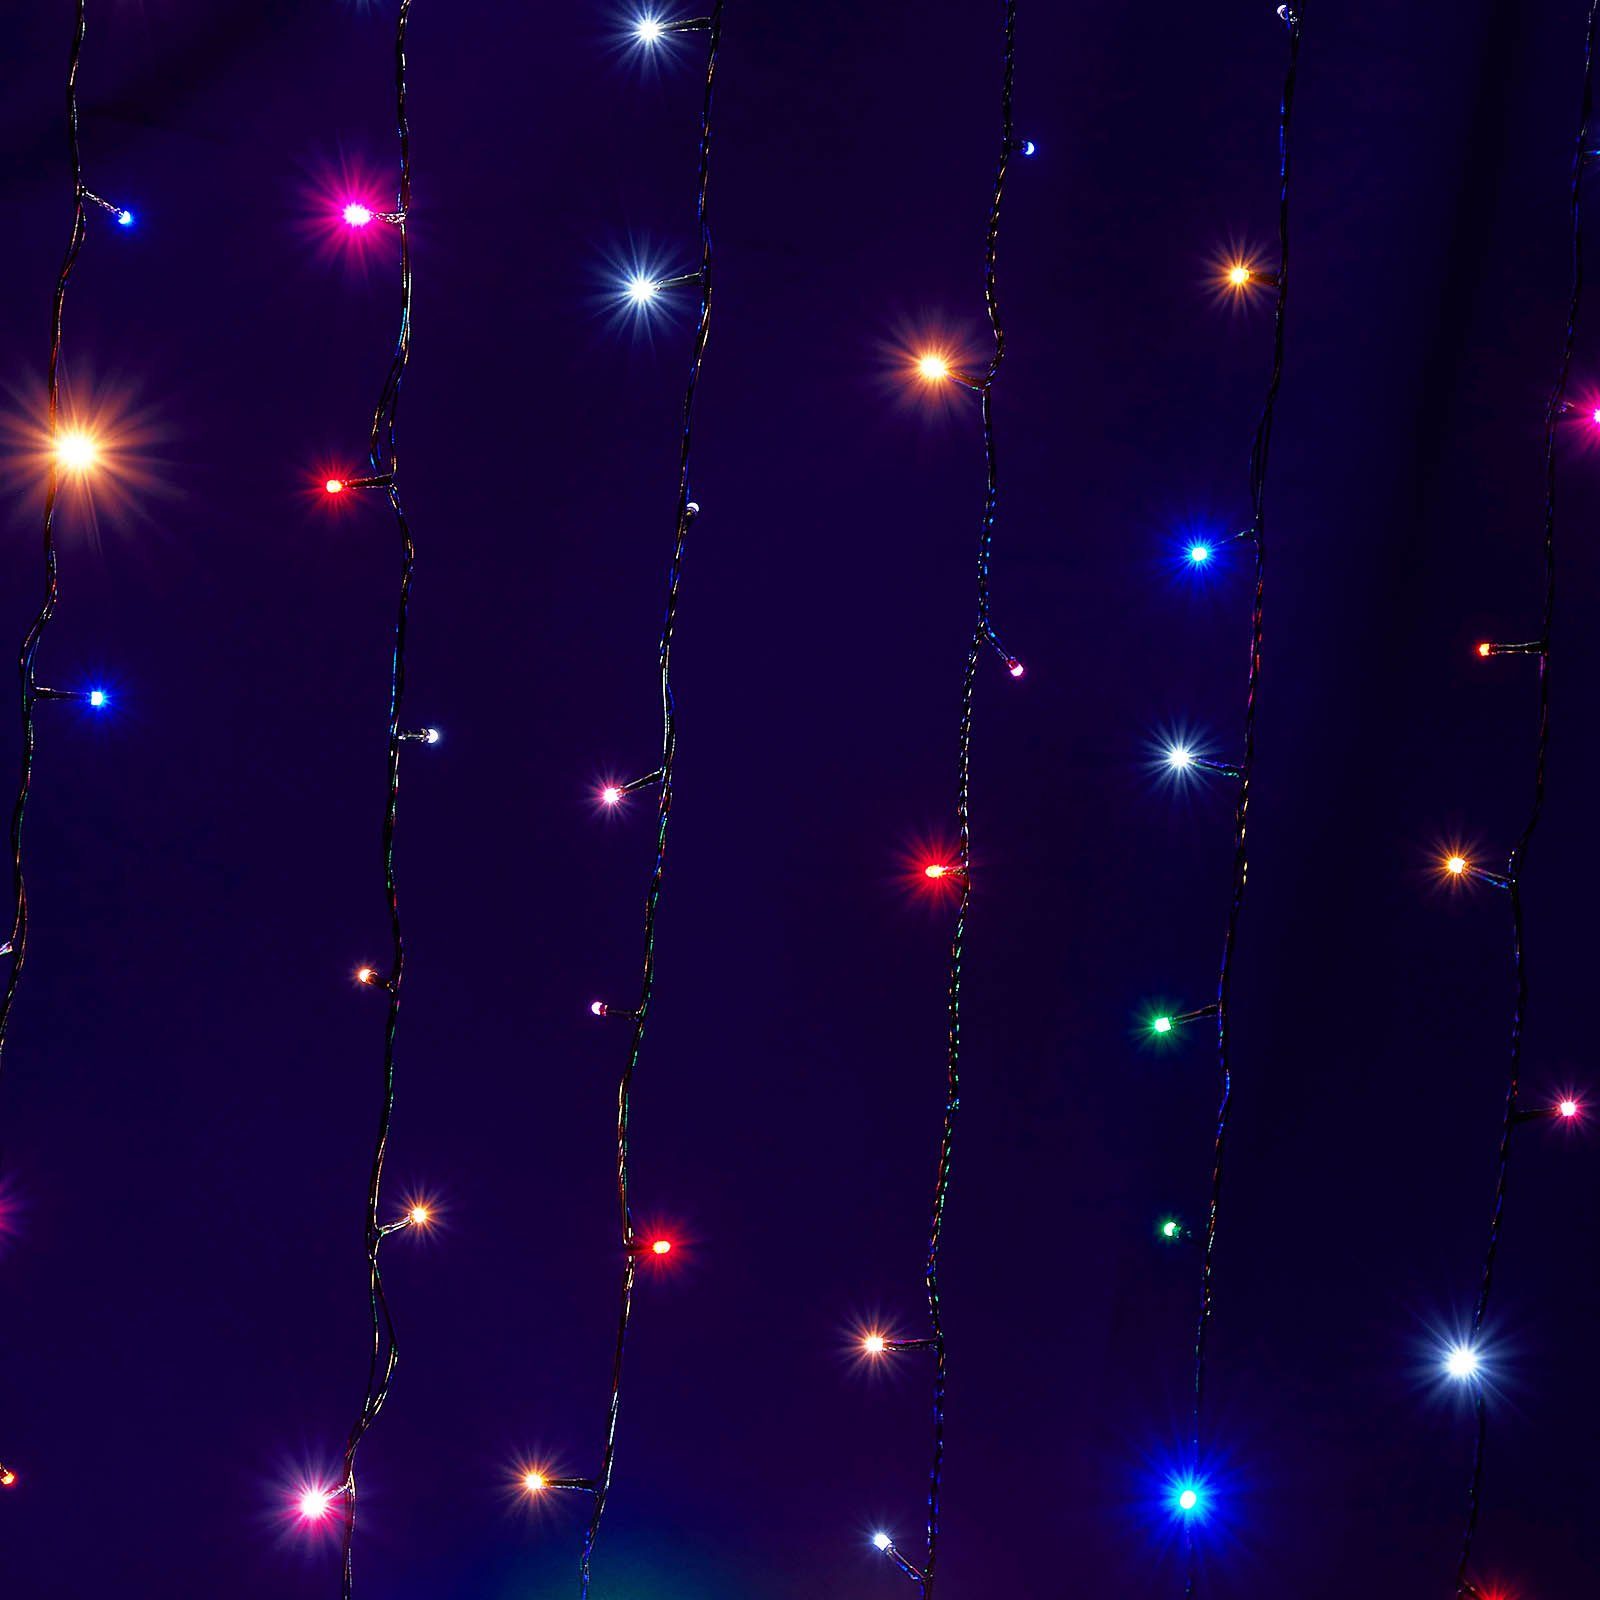 Garten LED-Baummantel 20m 156-flammig Rosnek Innen LED Baum, Party Mehrfarbig Lichterkette for Weihnachten Außen